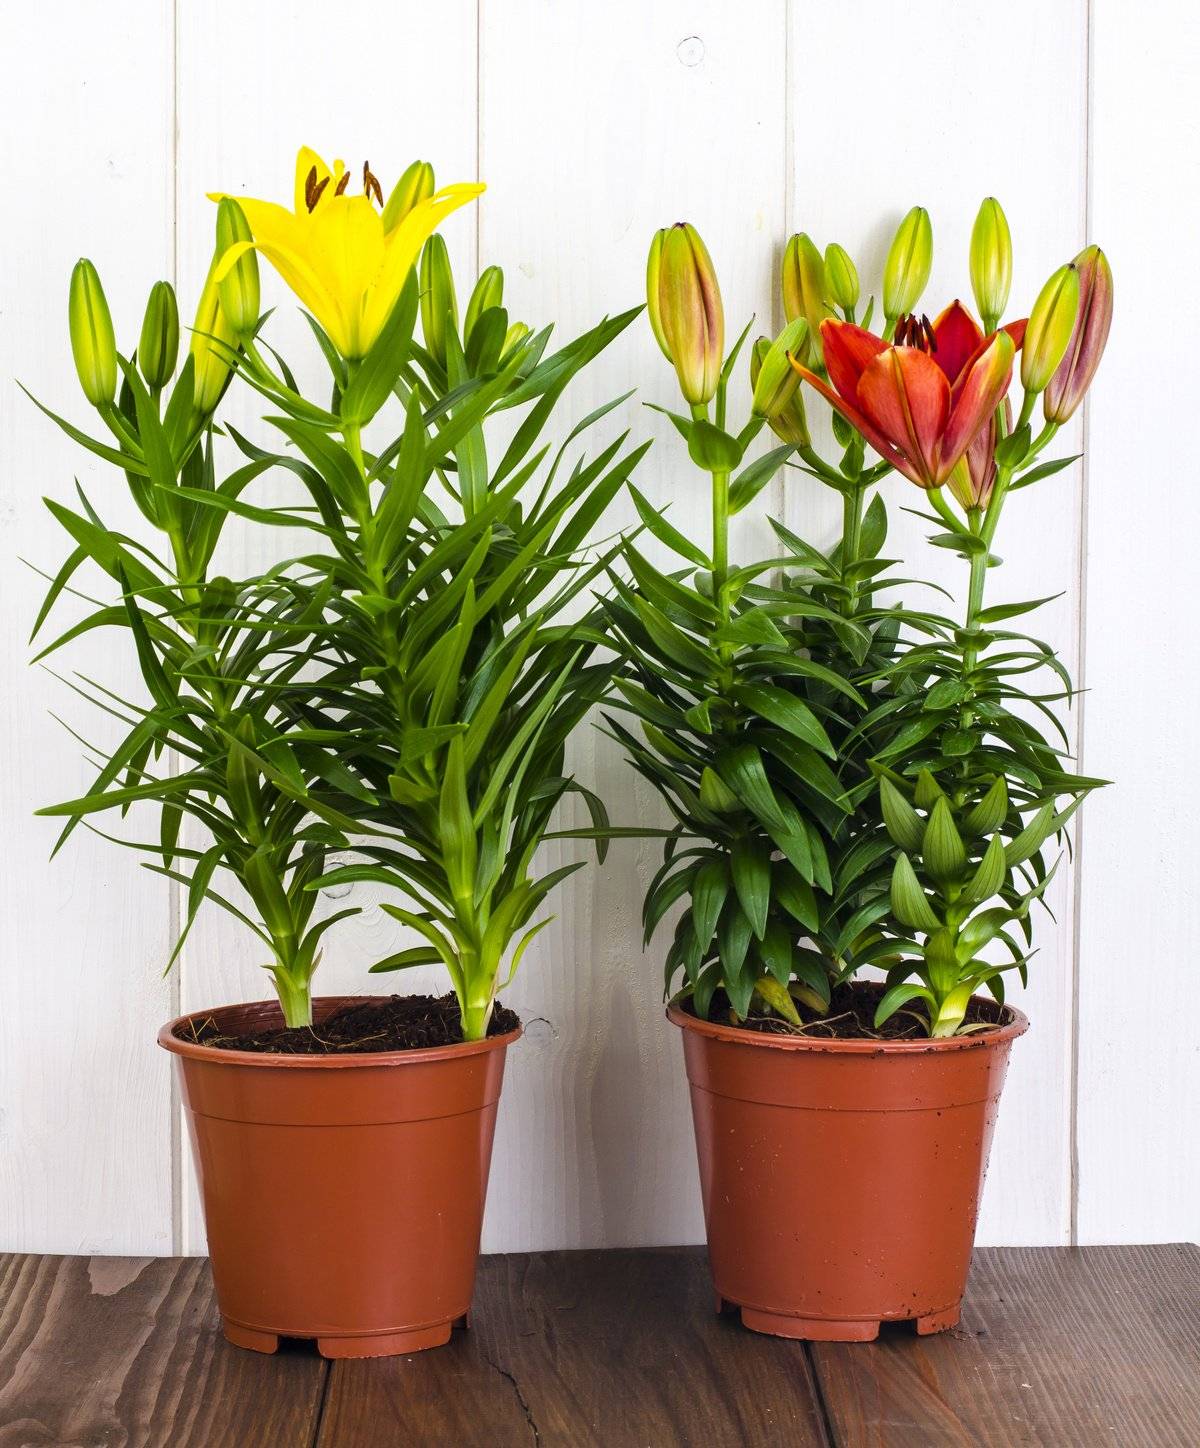 Комнатная лилия в горшке — название и как ухаживать за цветком в домашних условиях